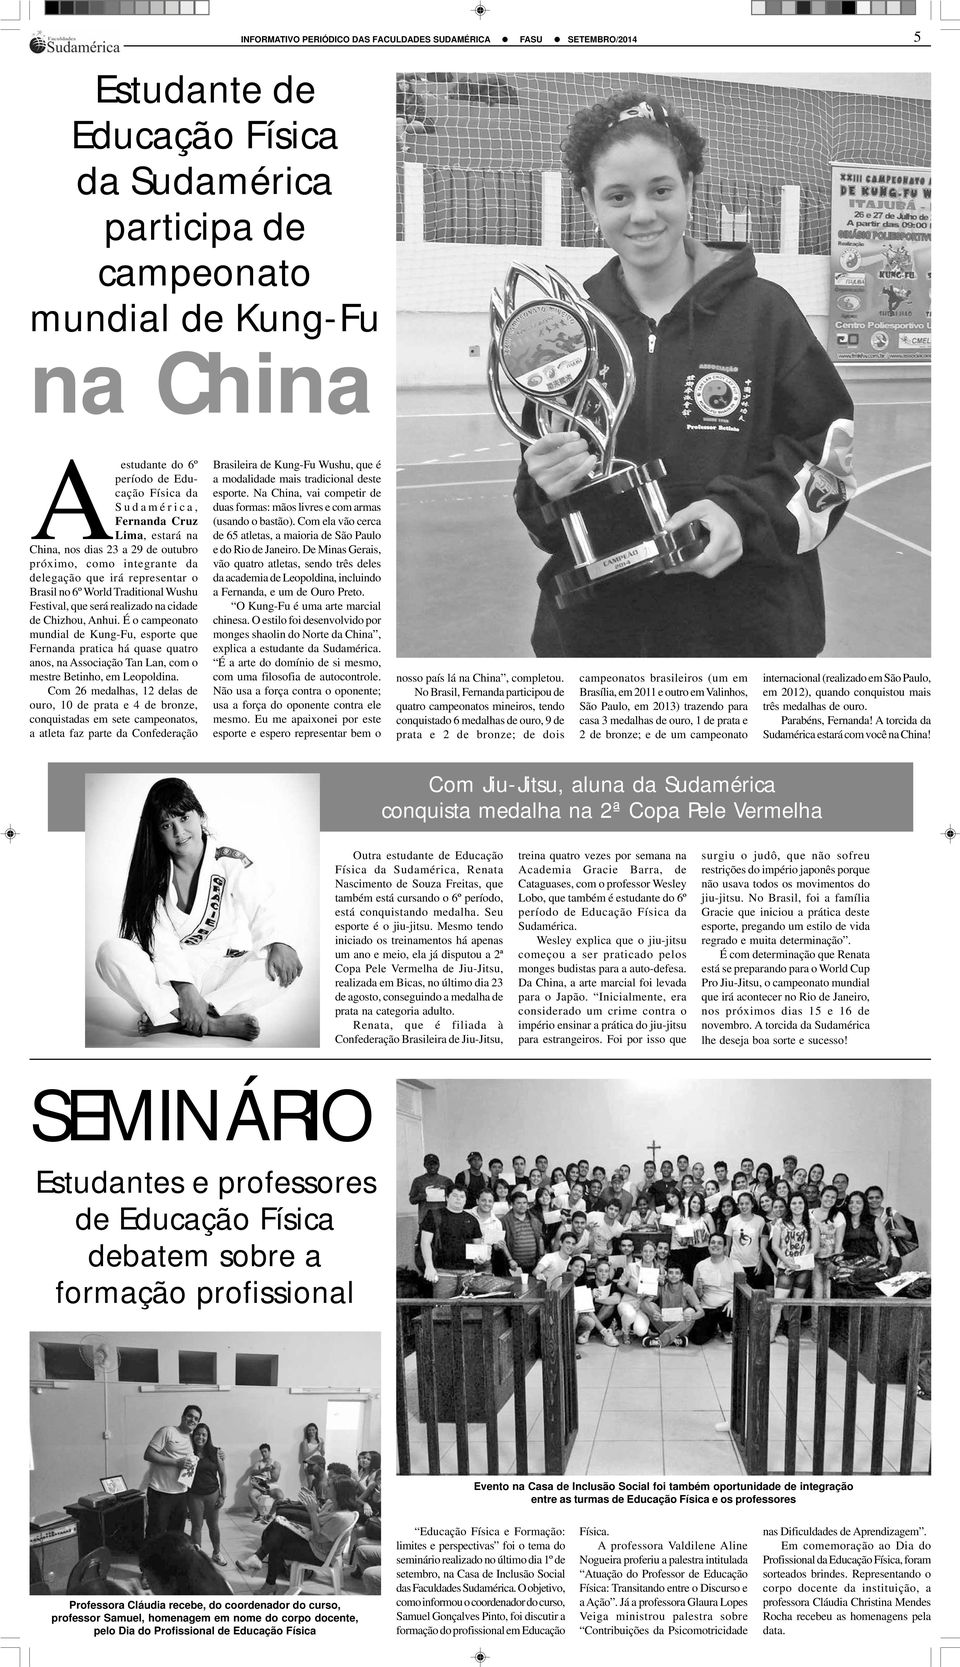 É o campeonato mundial de Kung-Fu, esporte que Fernanda pratica há quase quatro anos, na Associação Tan Lan, com o mestre Betinho, em Leopoldina.